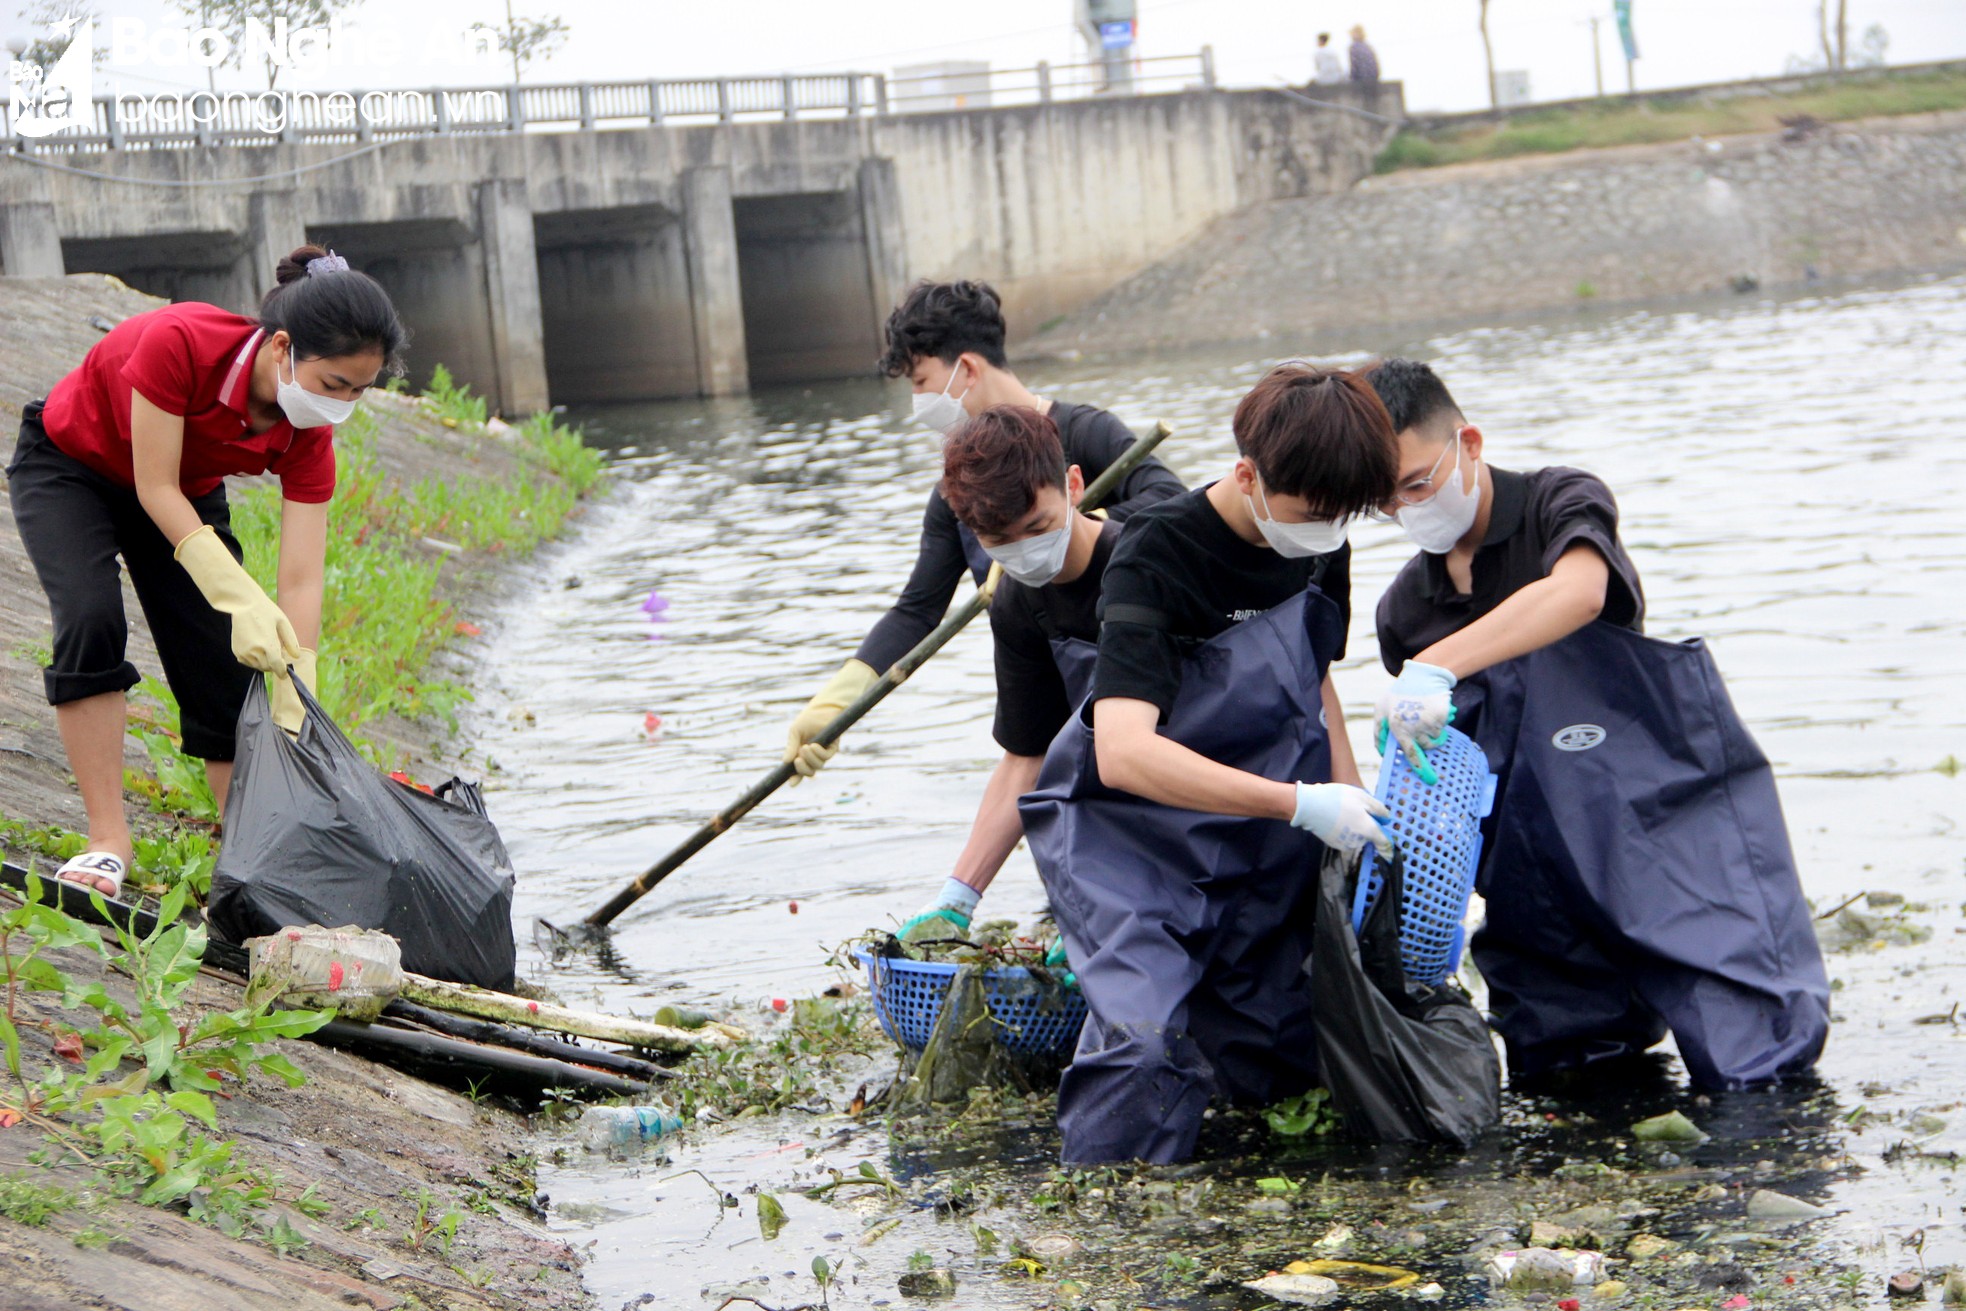 Nghệ An Xanh - Nhóm bạn trẻ gen Z tình nguyện dọn rác, làm sạch môi trường - Ảnh 4.